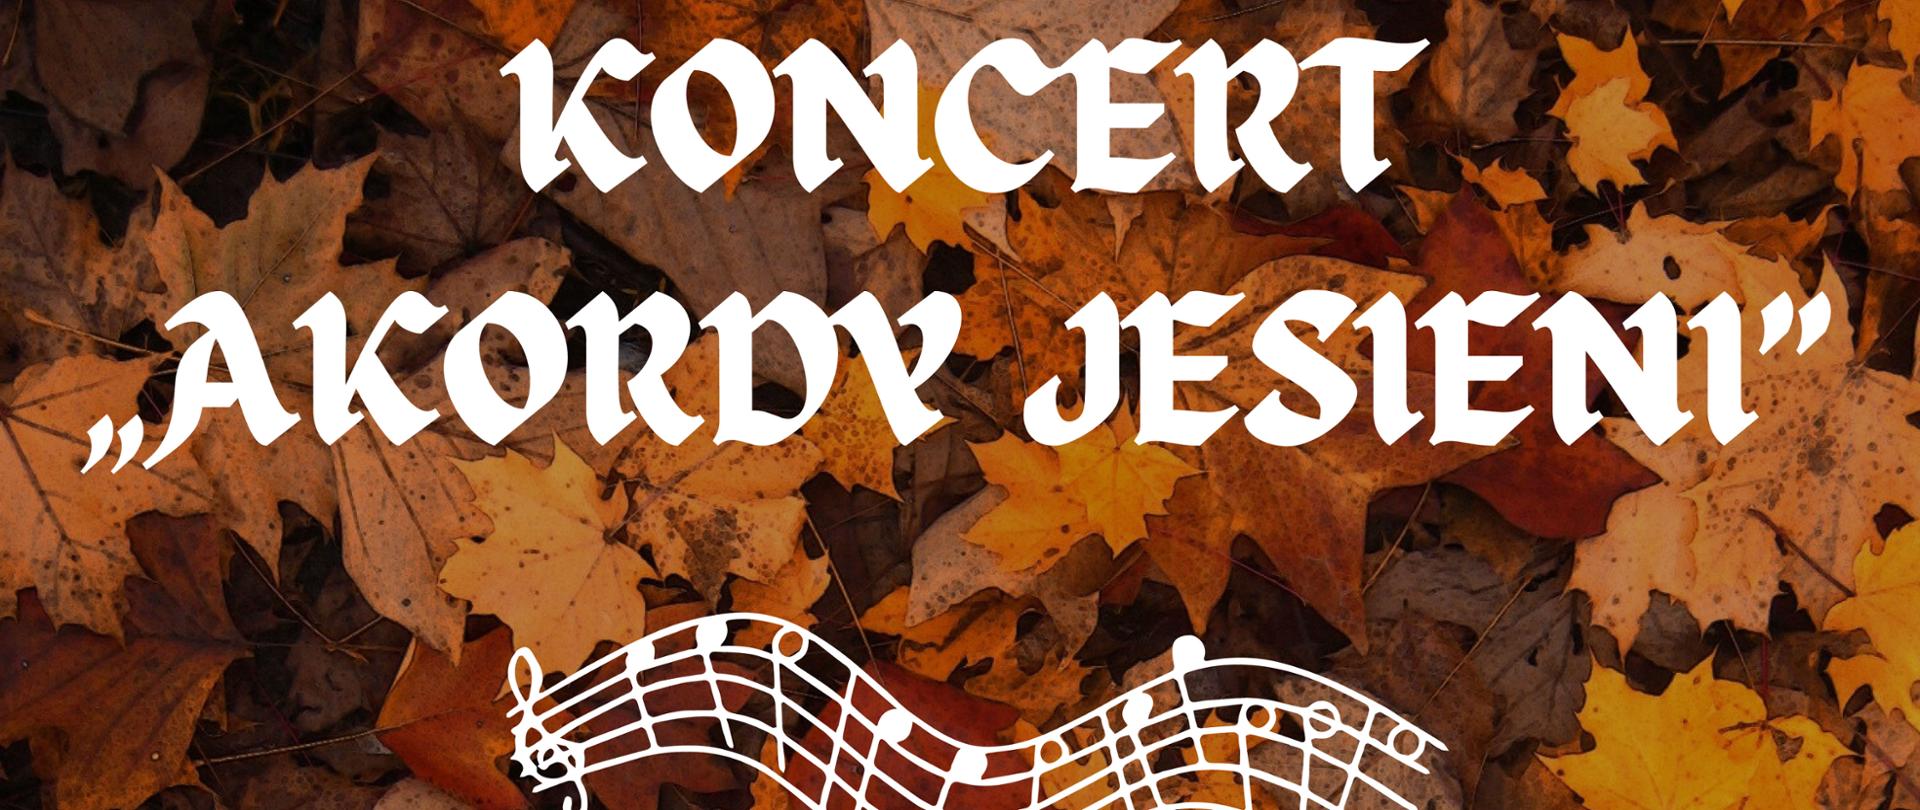 plakat promujący Koncert Akordy jesieni zawierający informacje na temat terminu oraz miejsca koncertu, całość na tle jesiennych liści